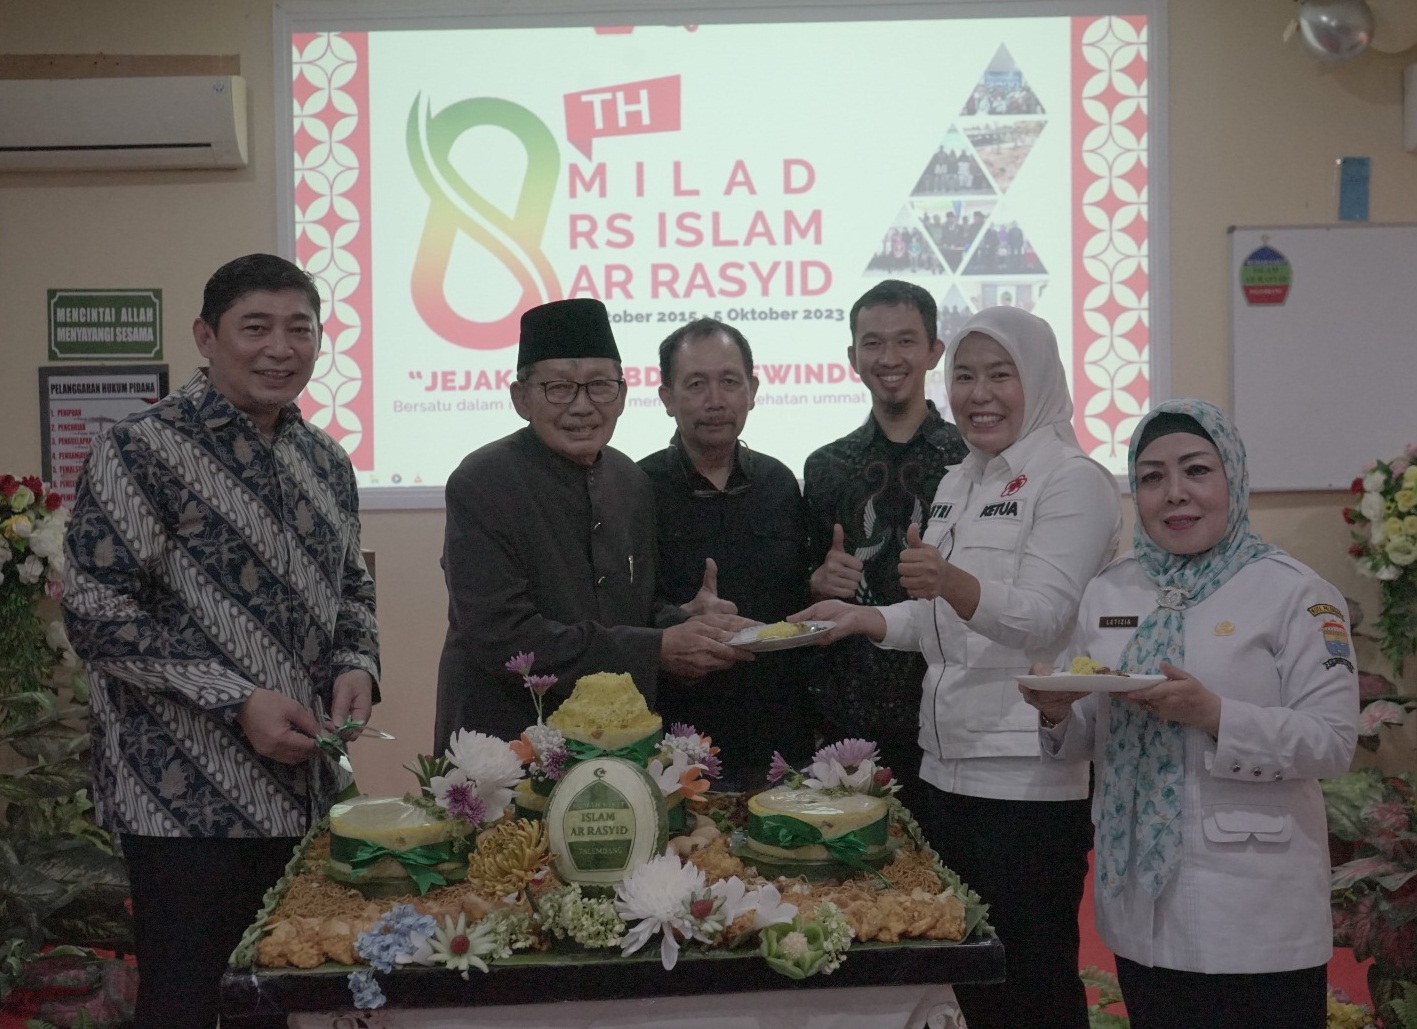   RSI Ar Rasyid Palembang, 8 Tahun Melayani Umat Secara Islami dan Profesional